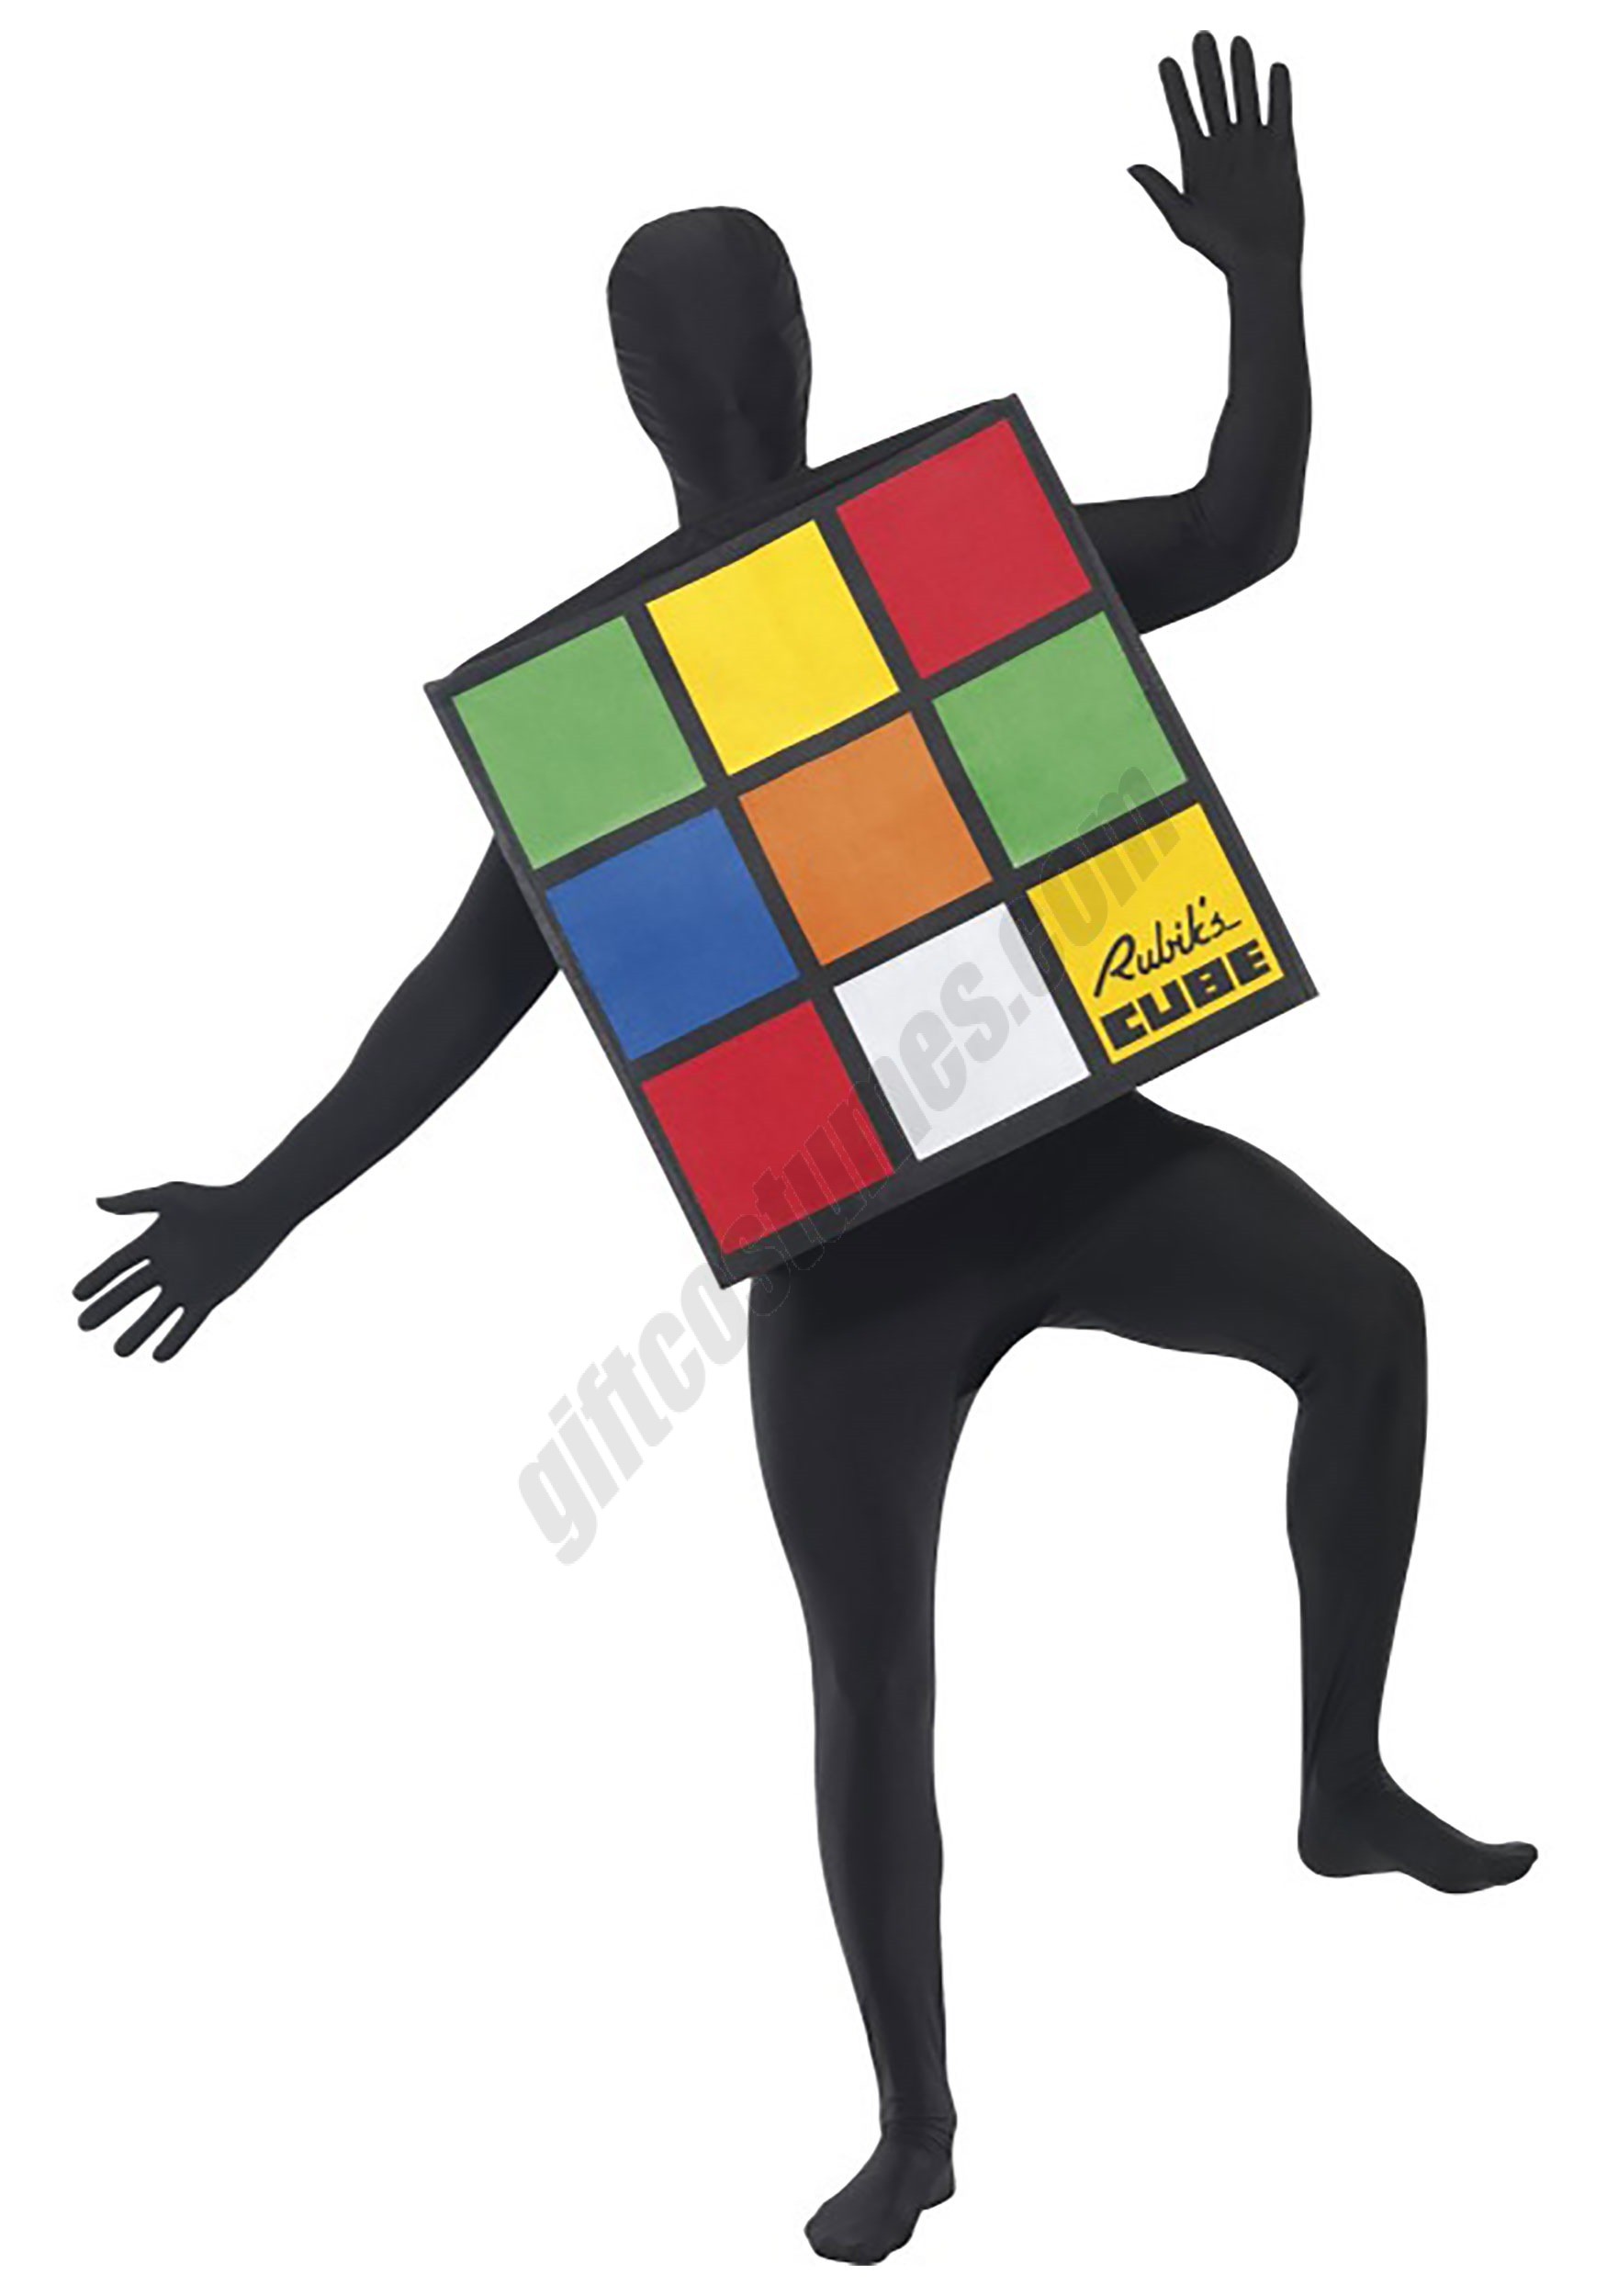 Rubik's Cube Costume for Adults - Women's - Rubik's Cube Costume for Adults - Women's